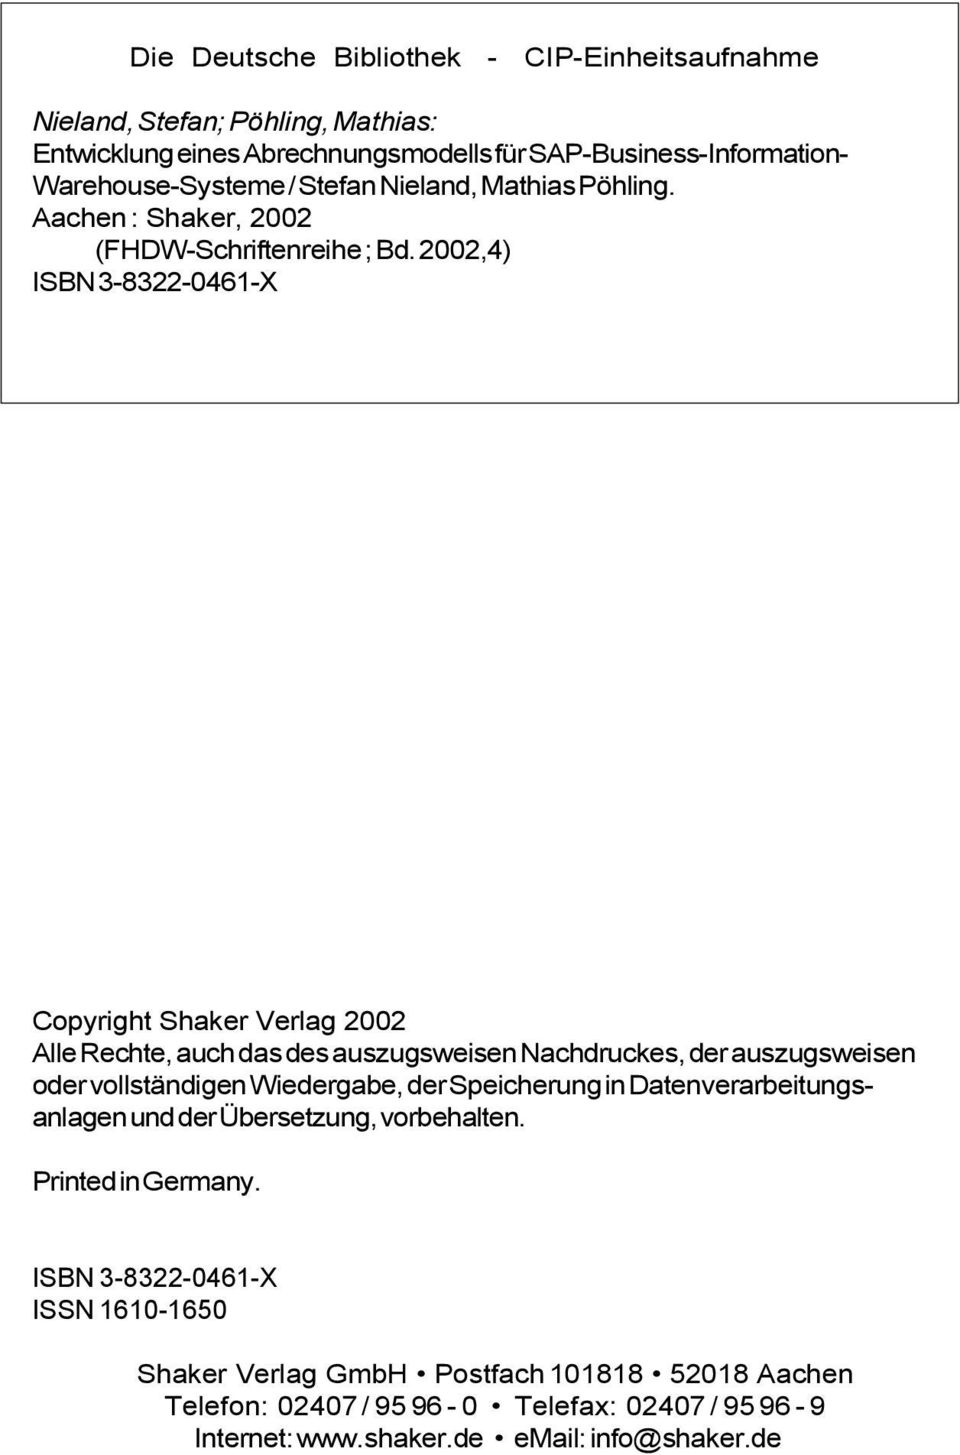 Copyright Shaker Verlag 2002 Alle Rechte, auch das des auszugsweisen Nachdruckes, der auszugsweisen oder vollständigen Wiedergabe, der Speicherung in Datenverarbeitungsanlagen und der